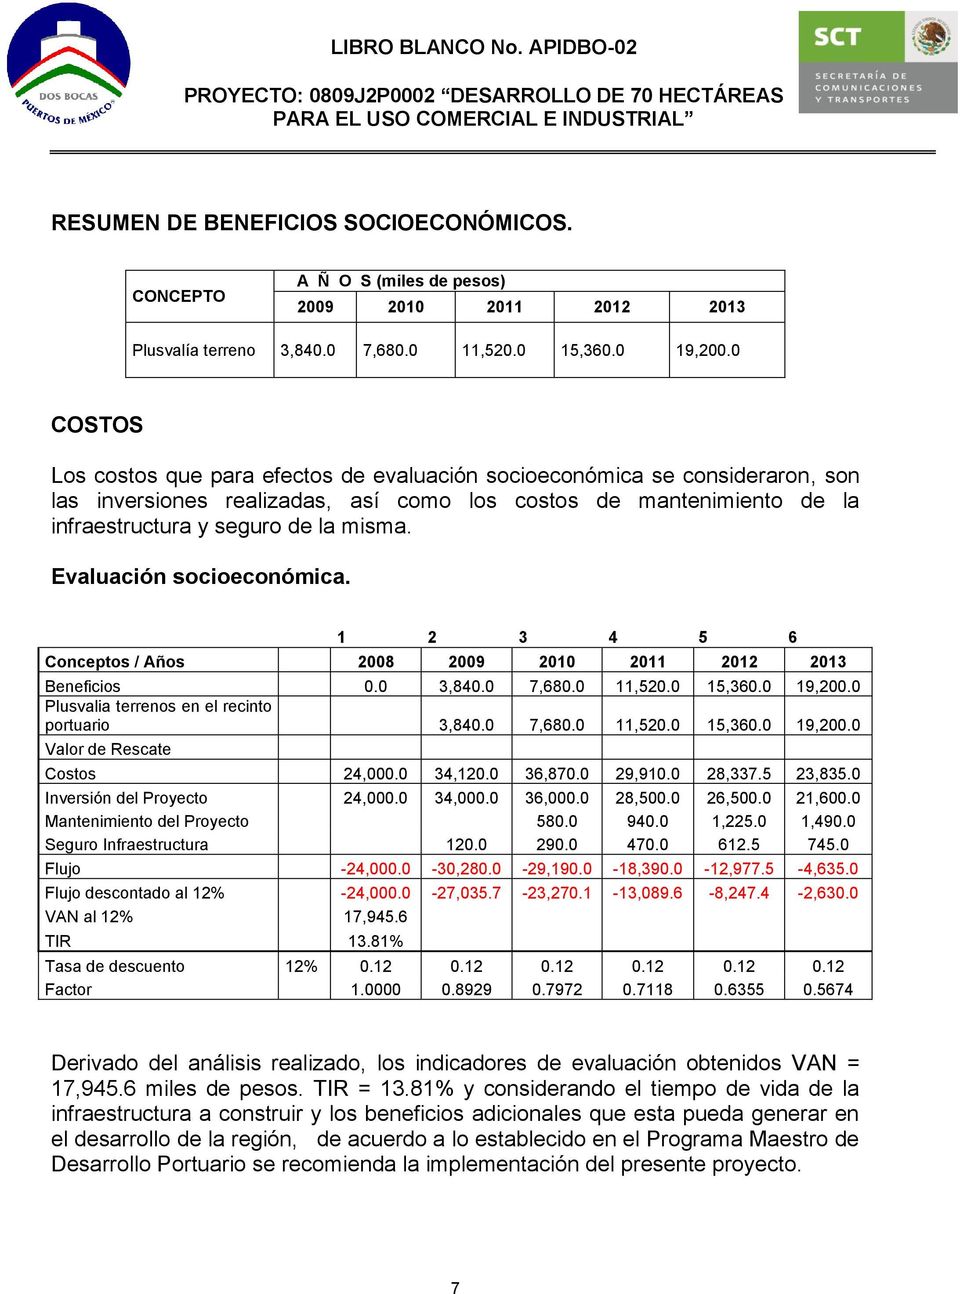 Evaluación socioeconómica. 1 2 3 4 5 6 Conceptos / Años 2008 2009 2010 2011 2012 2013 Beneficios 0.0 3,840.0 7,680.0 11,520.0 15,360.0 19,200.0 Plusvalia terrenos en el recinto portuario 3,840.